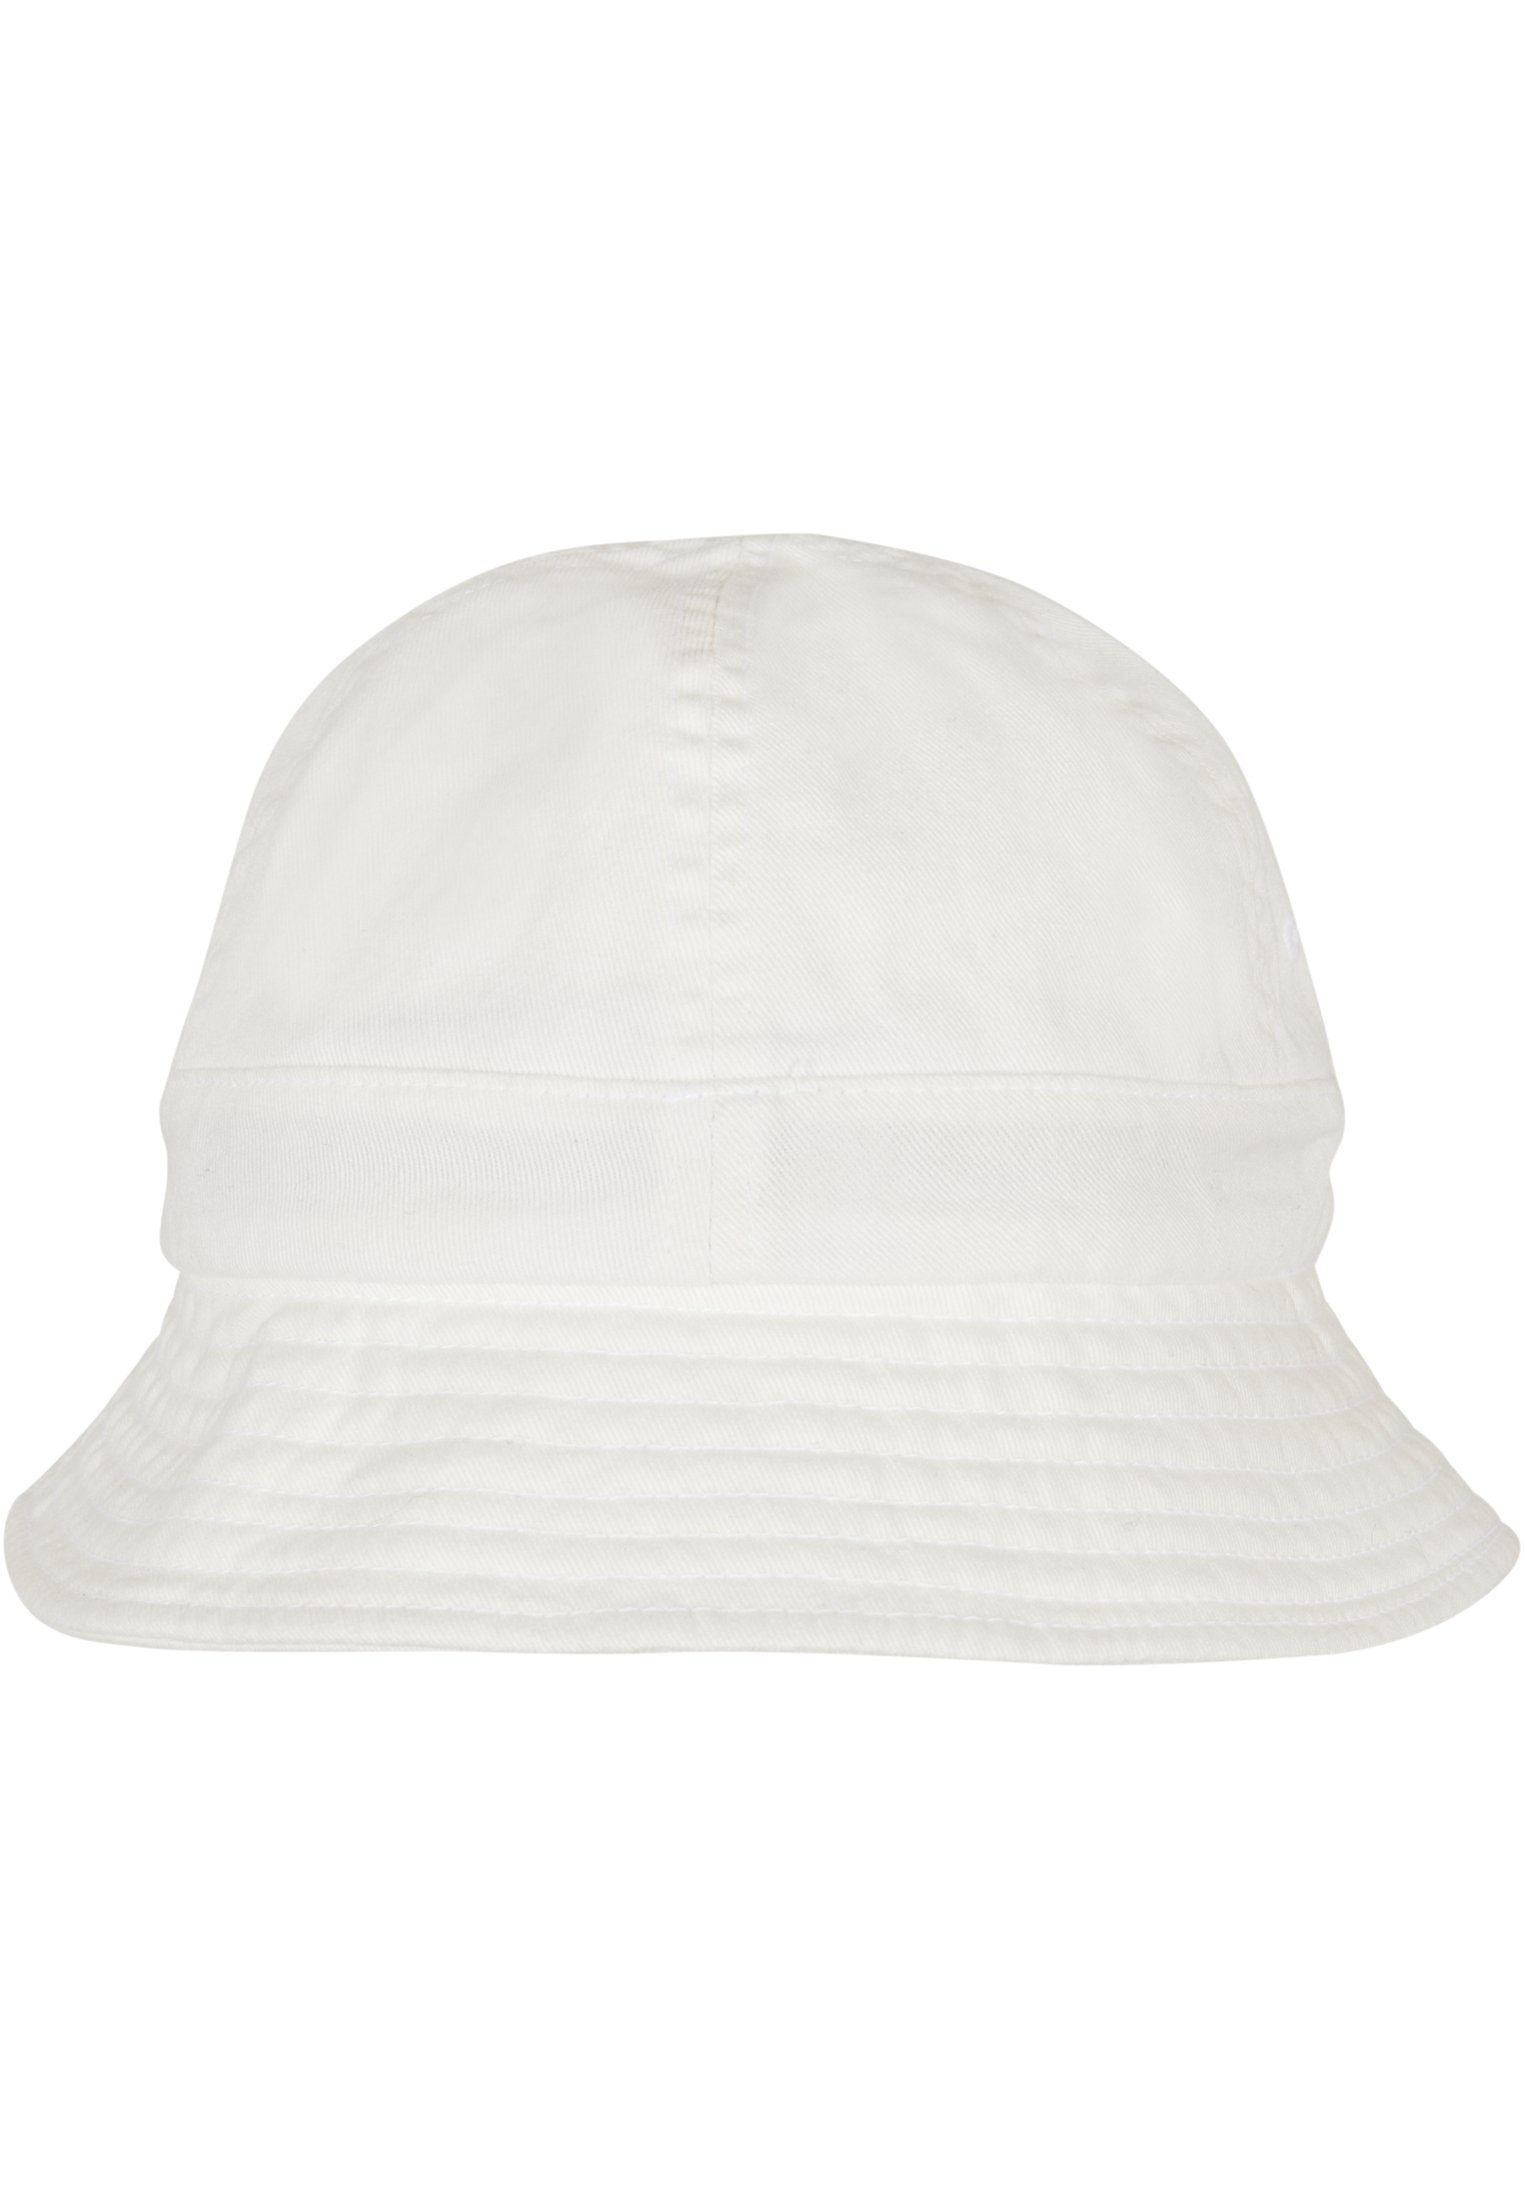 Tennis Accessoires Hat Washing white Eco Flex Flexfit Cap Notop Flexfit